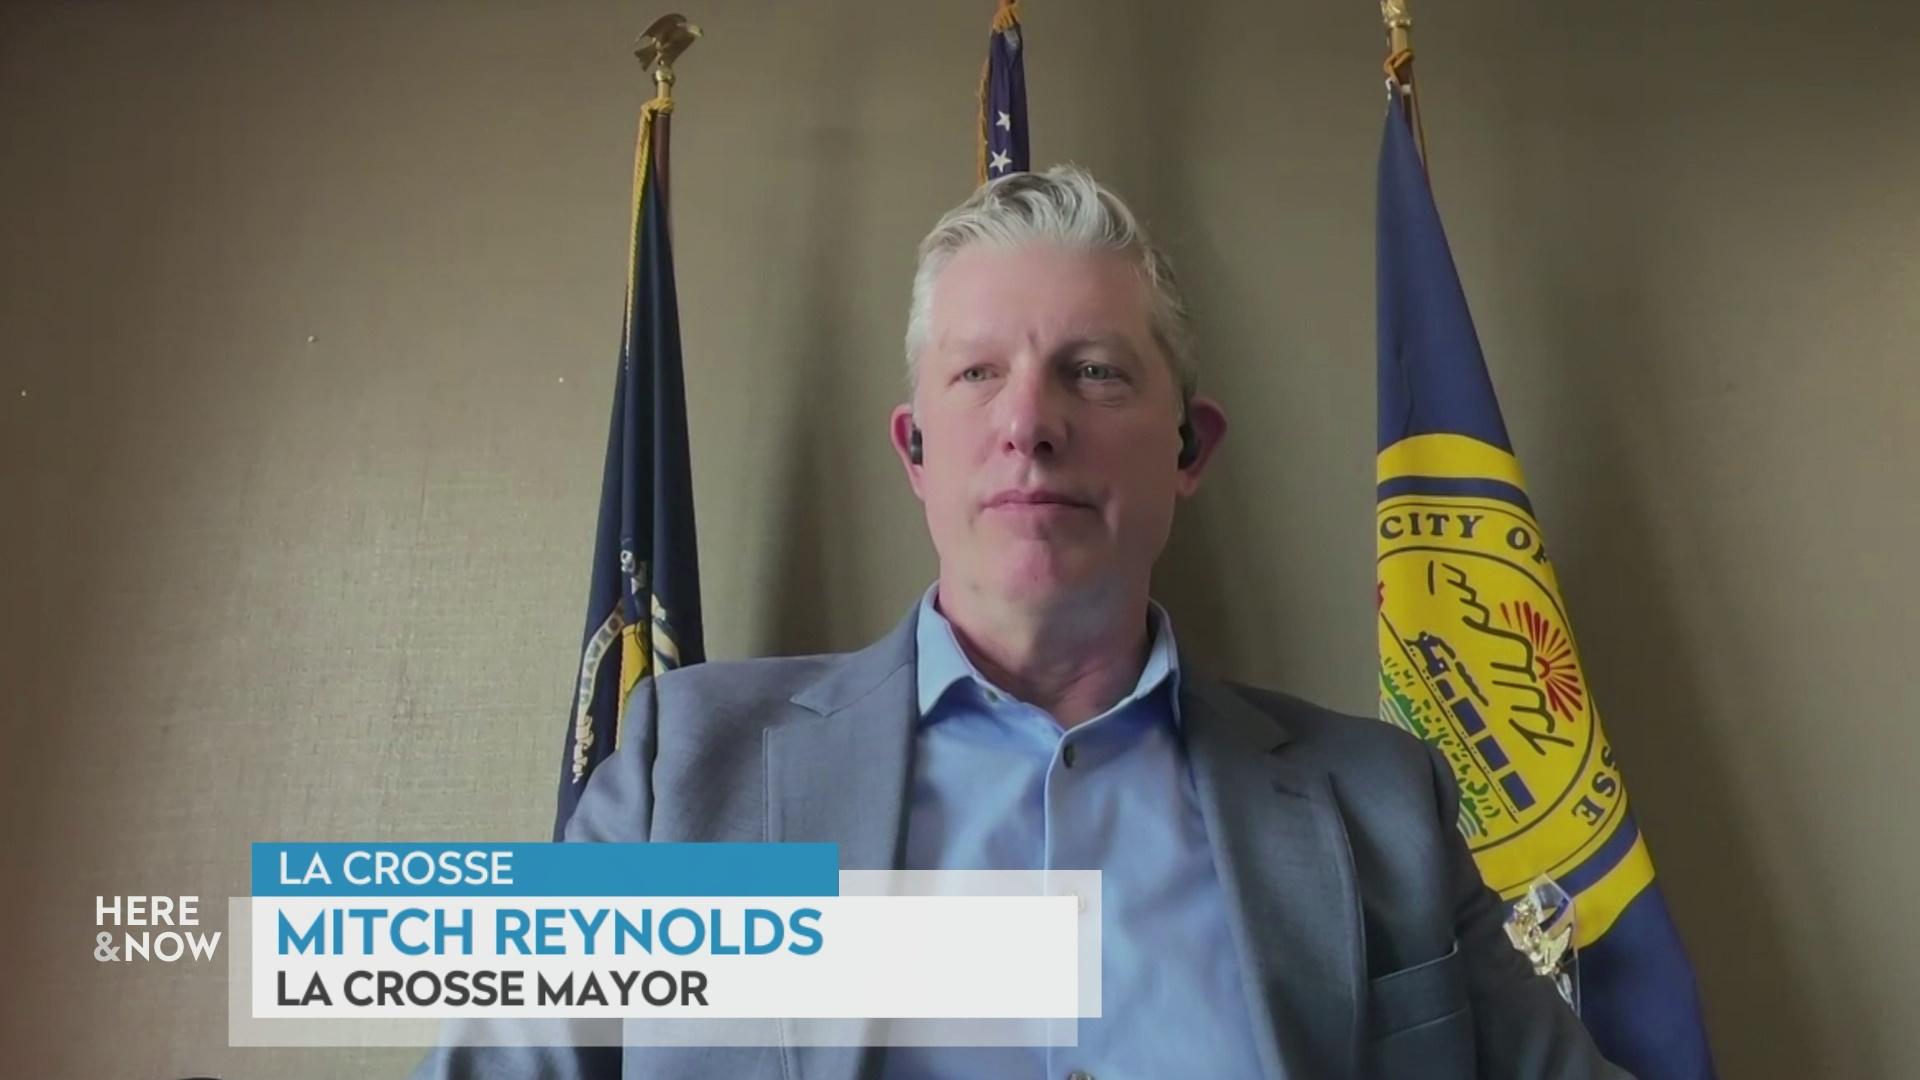 Mayor Mitch Reynolds on homelessness, housing in La Crosse